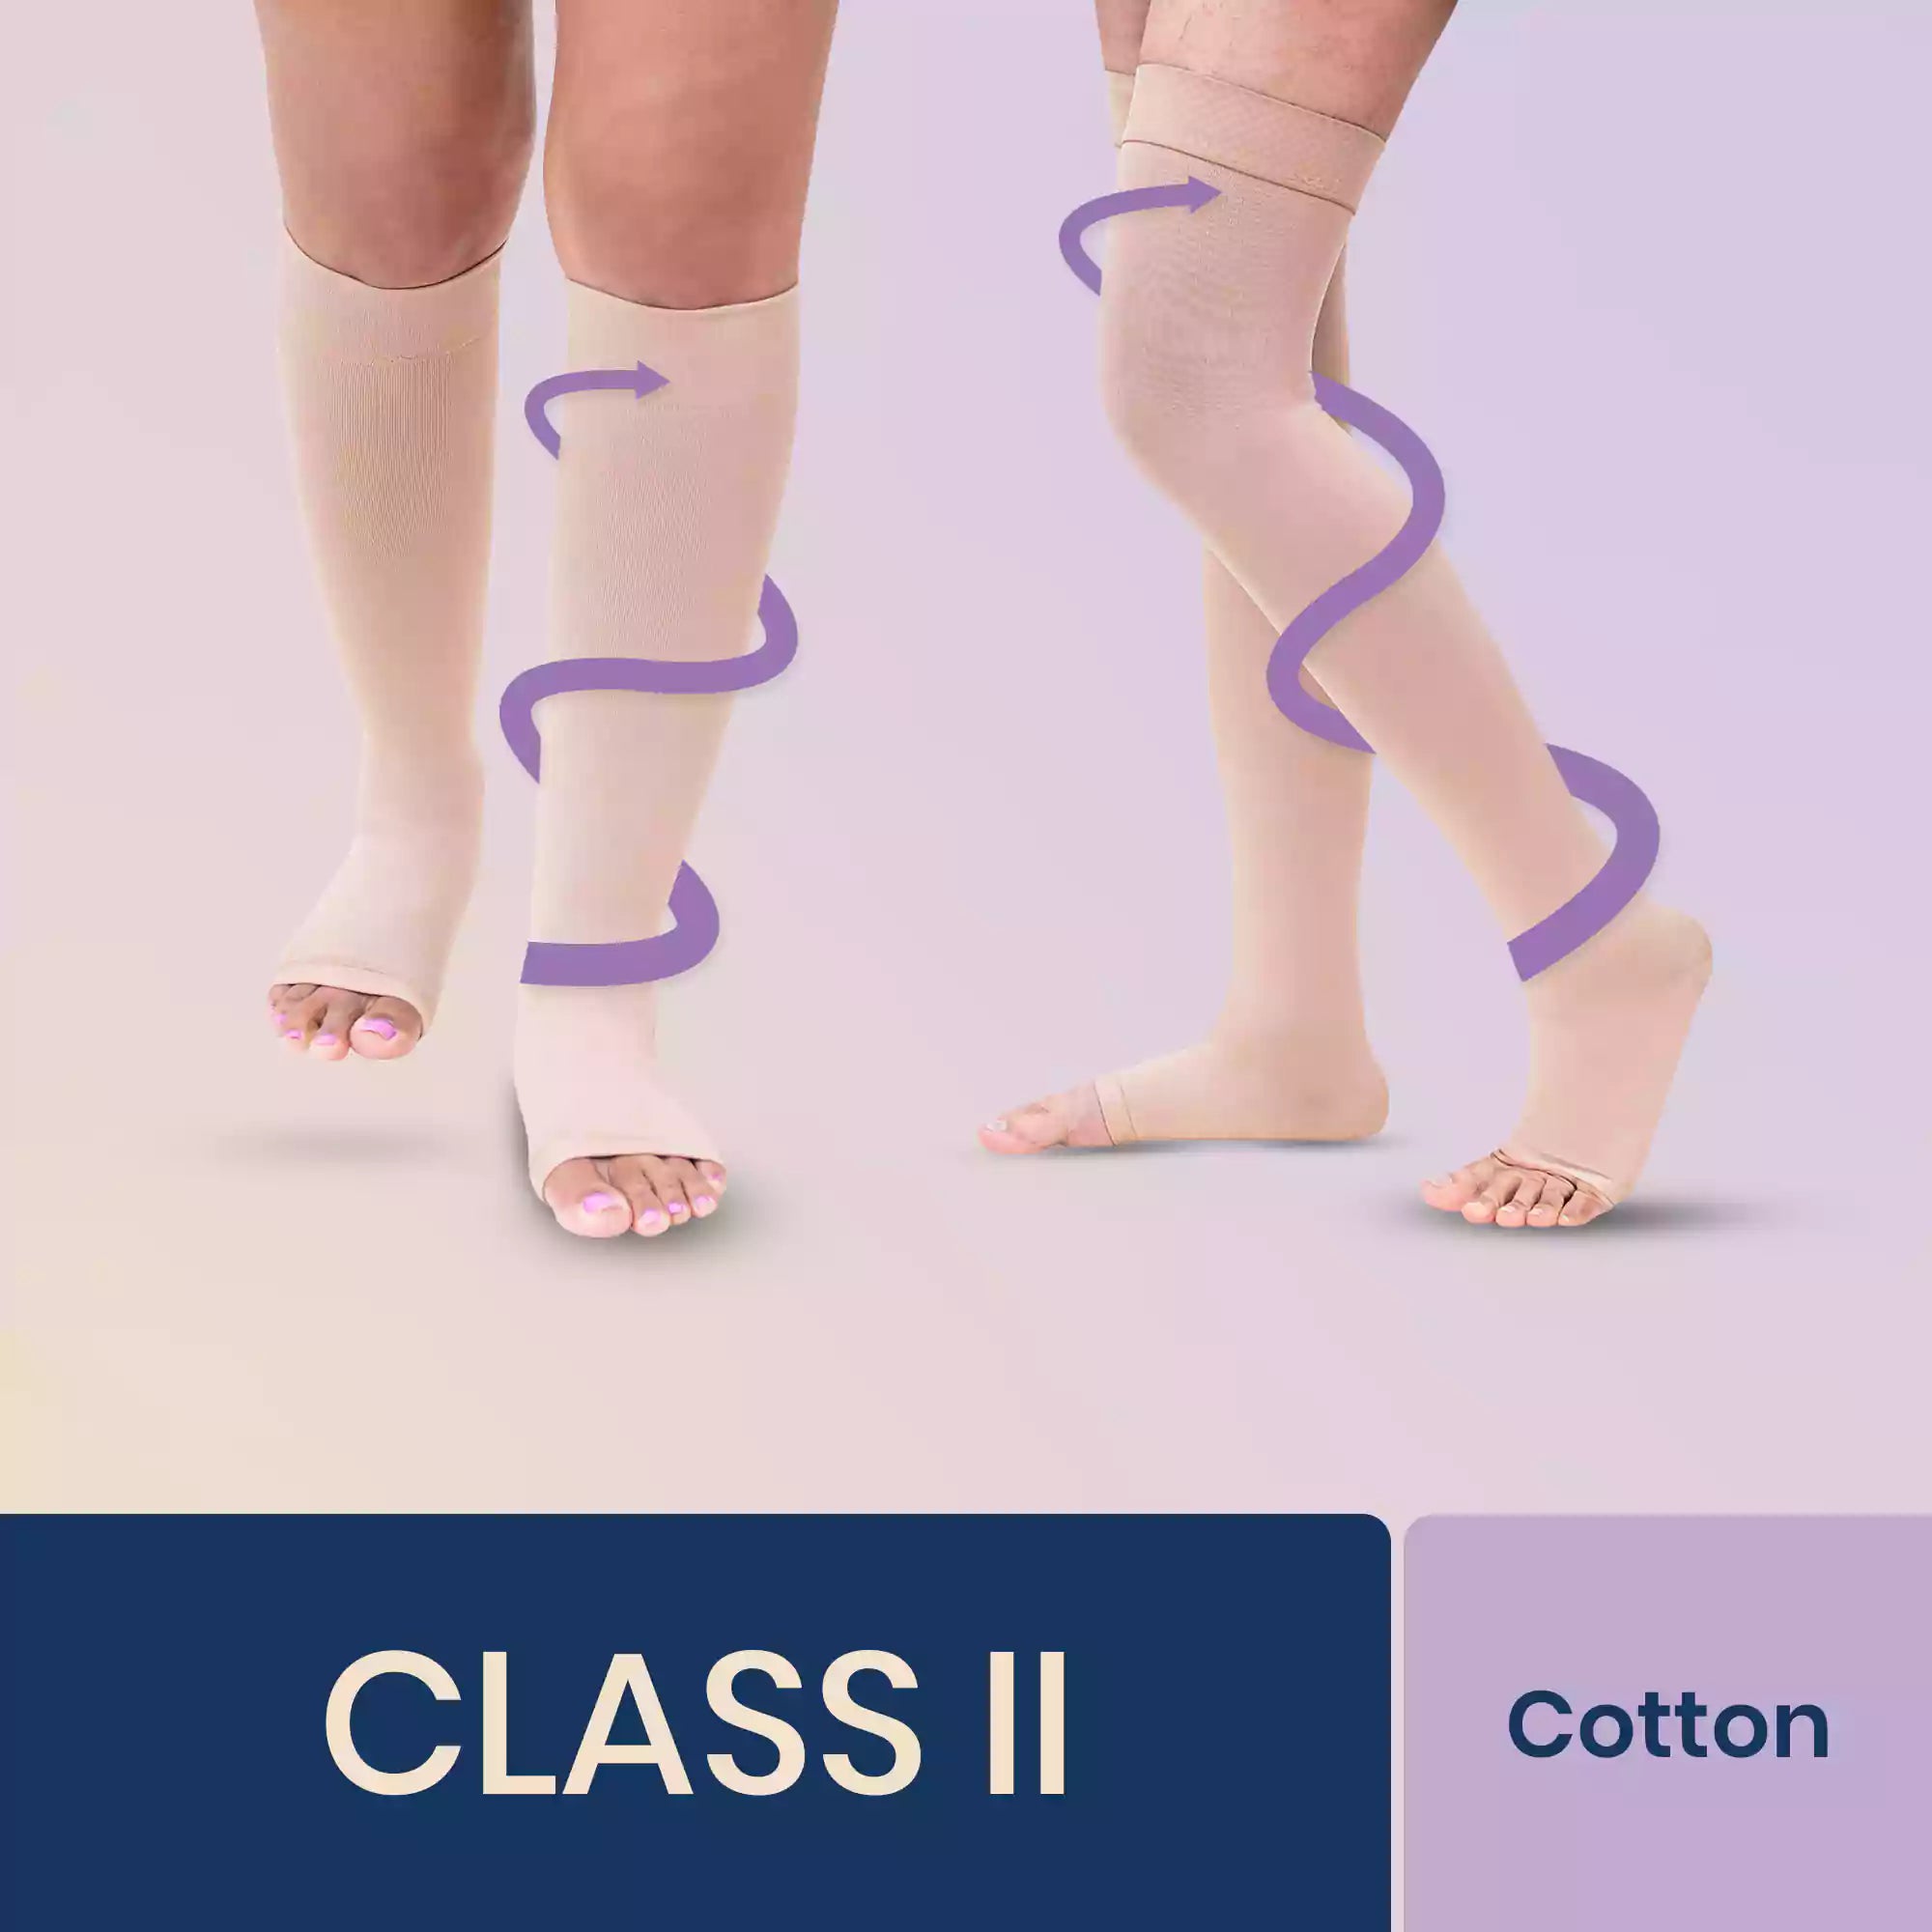 LHCER Compression Stockings, Compression Stockings,Elastic Compression  Stockings Varicose Veins Stockings Leg Slimming